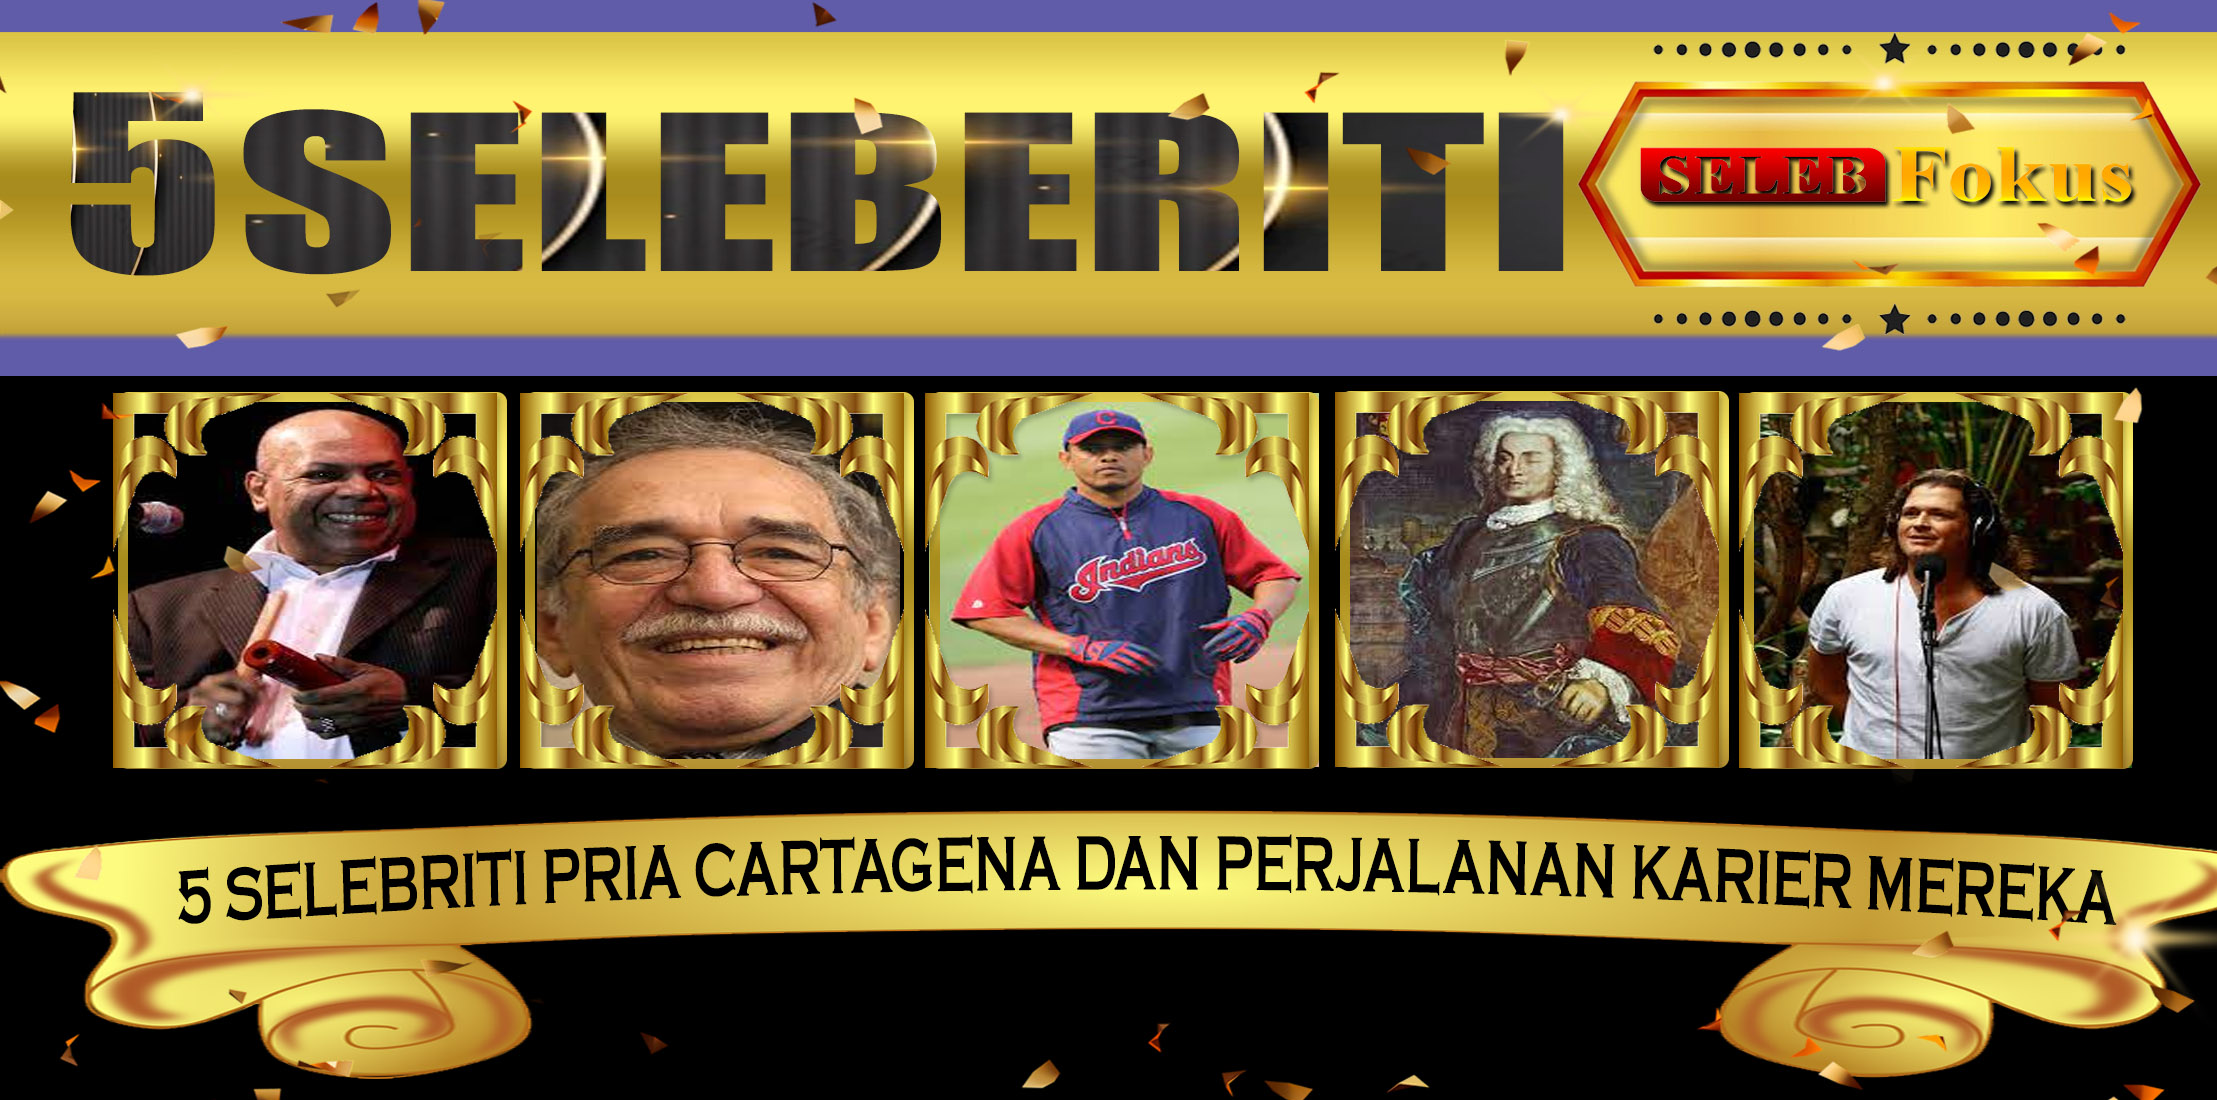 5 Selebriti Pria Cartagena